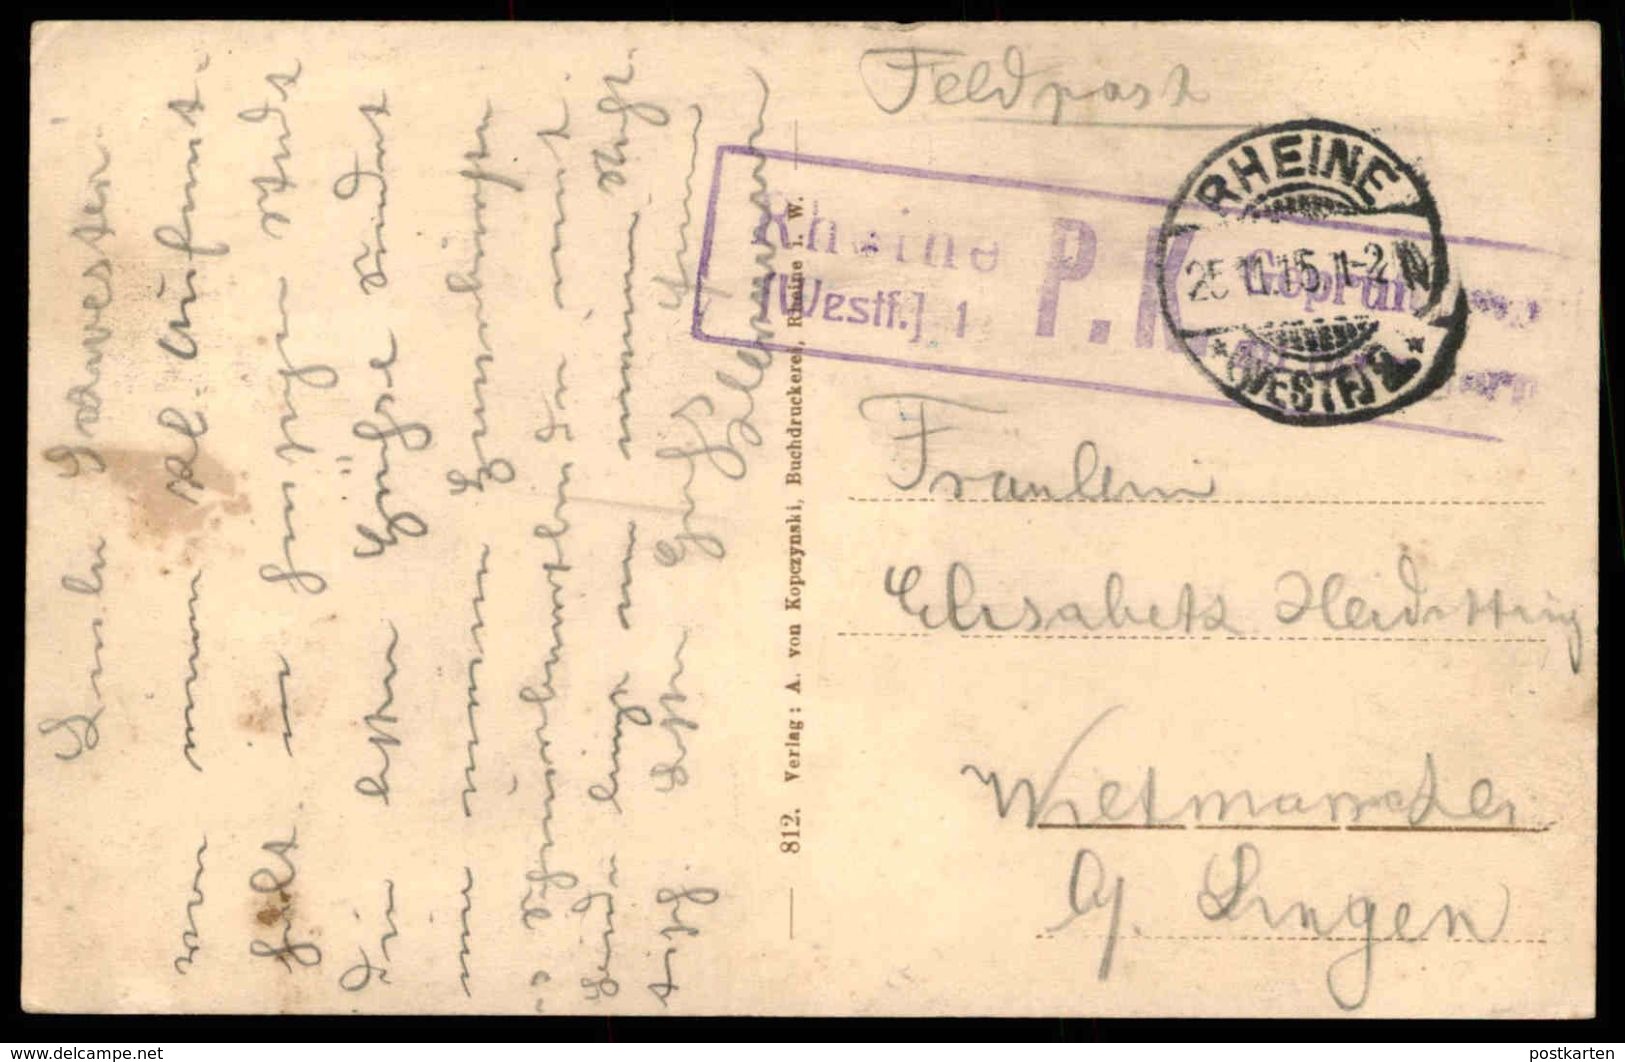 ALTE POSTKARTE GRUSS AUS RHEINE SOLBAD GOTTESGABE KURHAUS 1915 FELDPOST Stempel P.K. Cachet Postes Militaires Postcard - Rheine